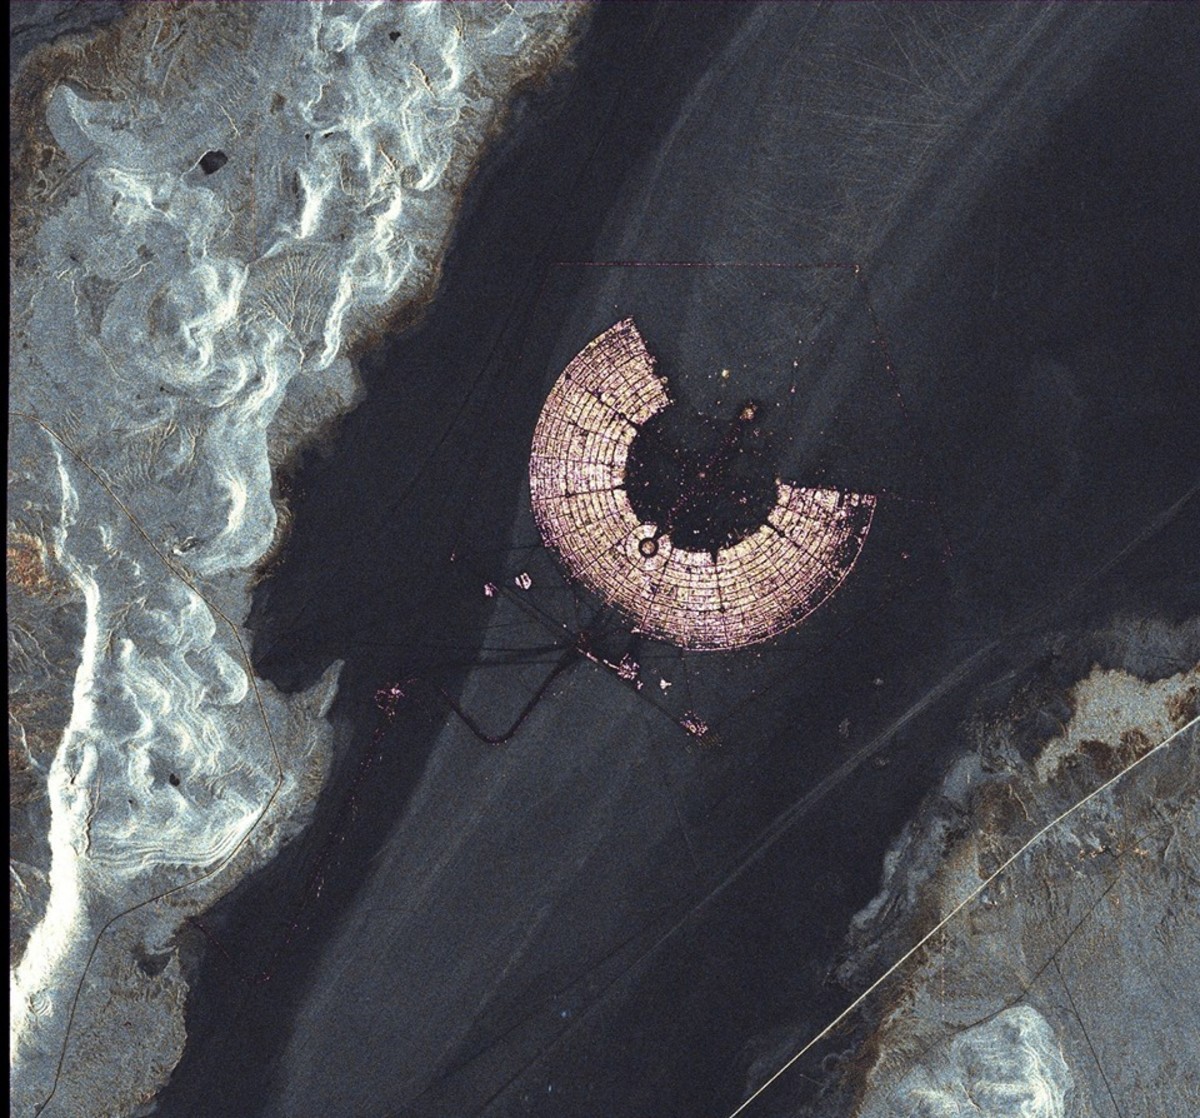 Burning Man 2016 Satellite View